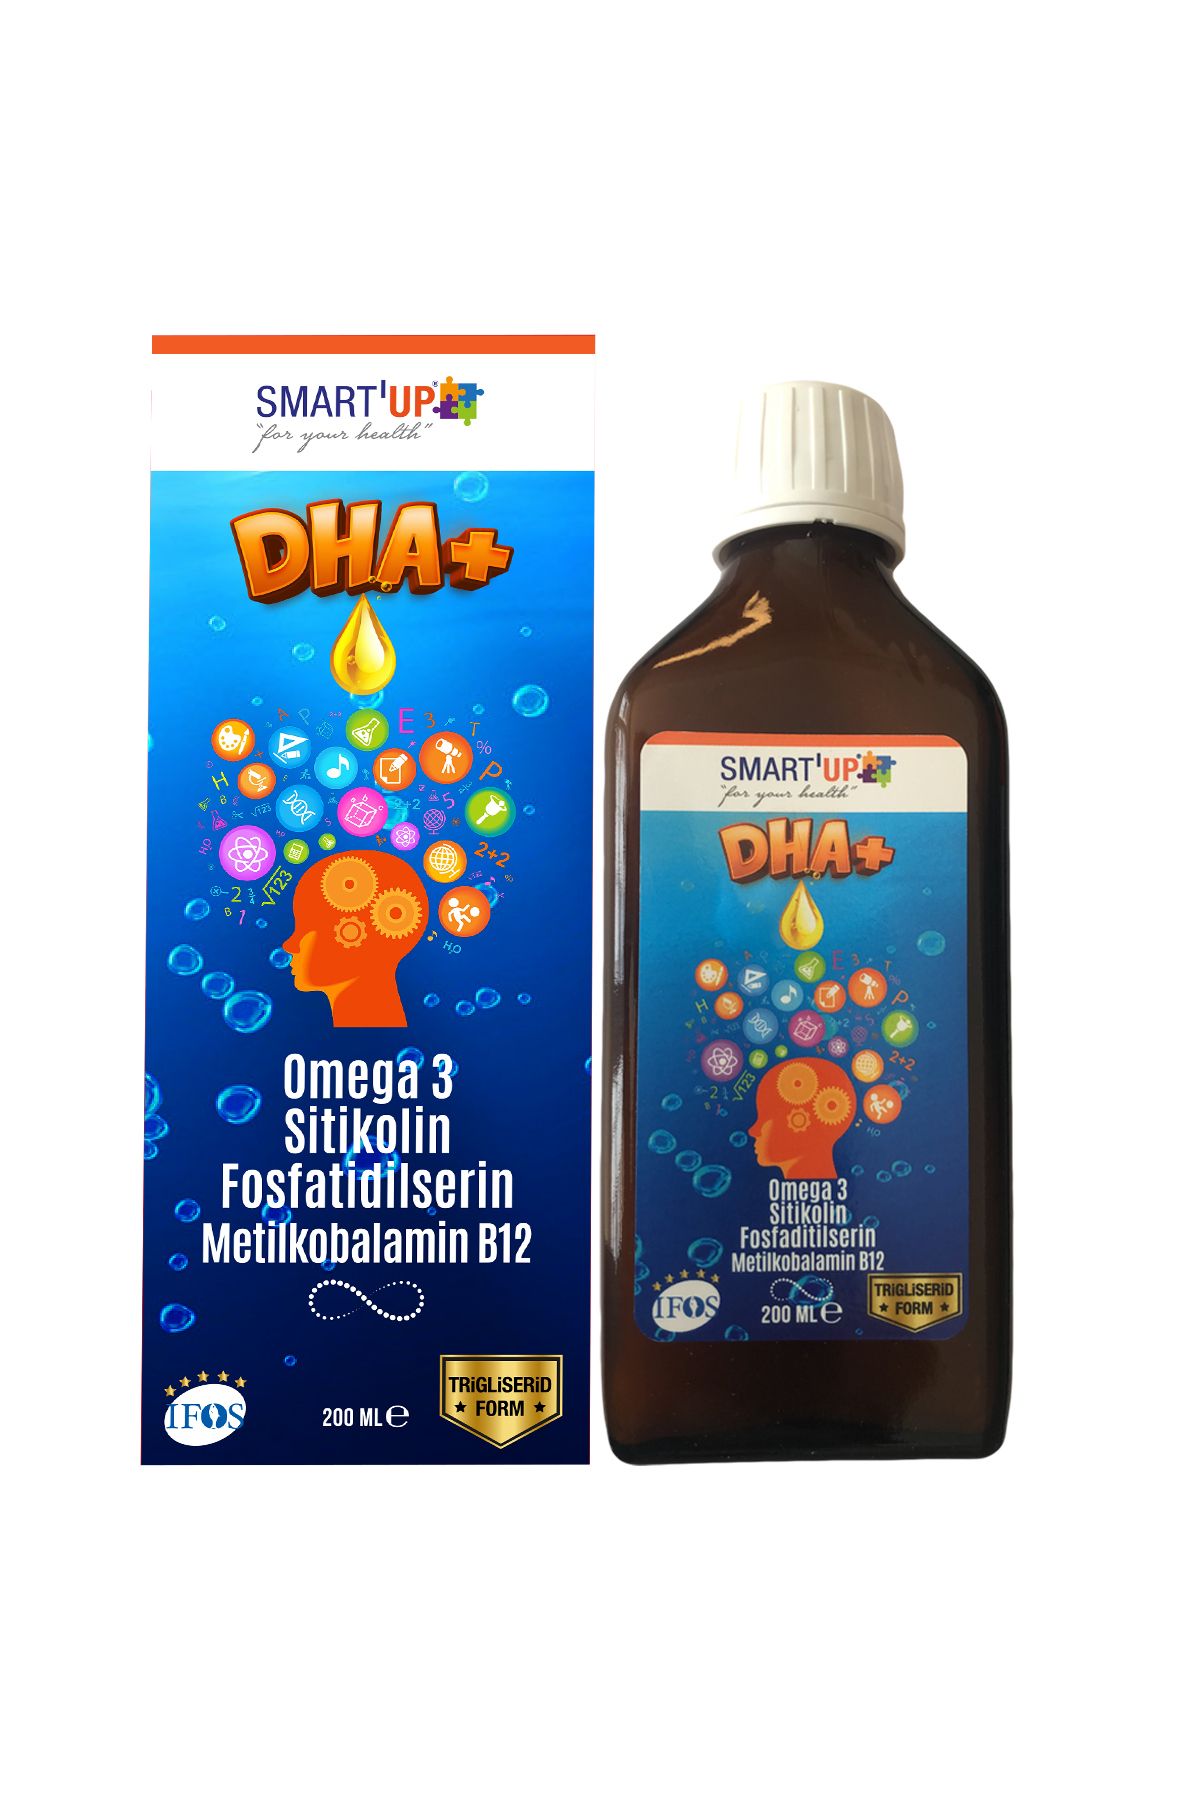 SMART UP Sitikolin Dha Omega 3 Ve Fosfatidilserin Iceren Balık Yağı B12 ( 200 ml )